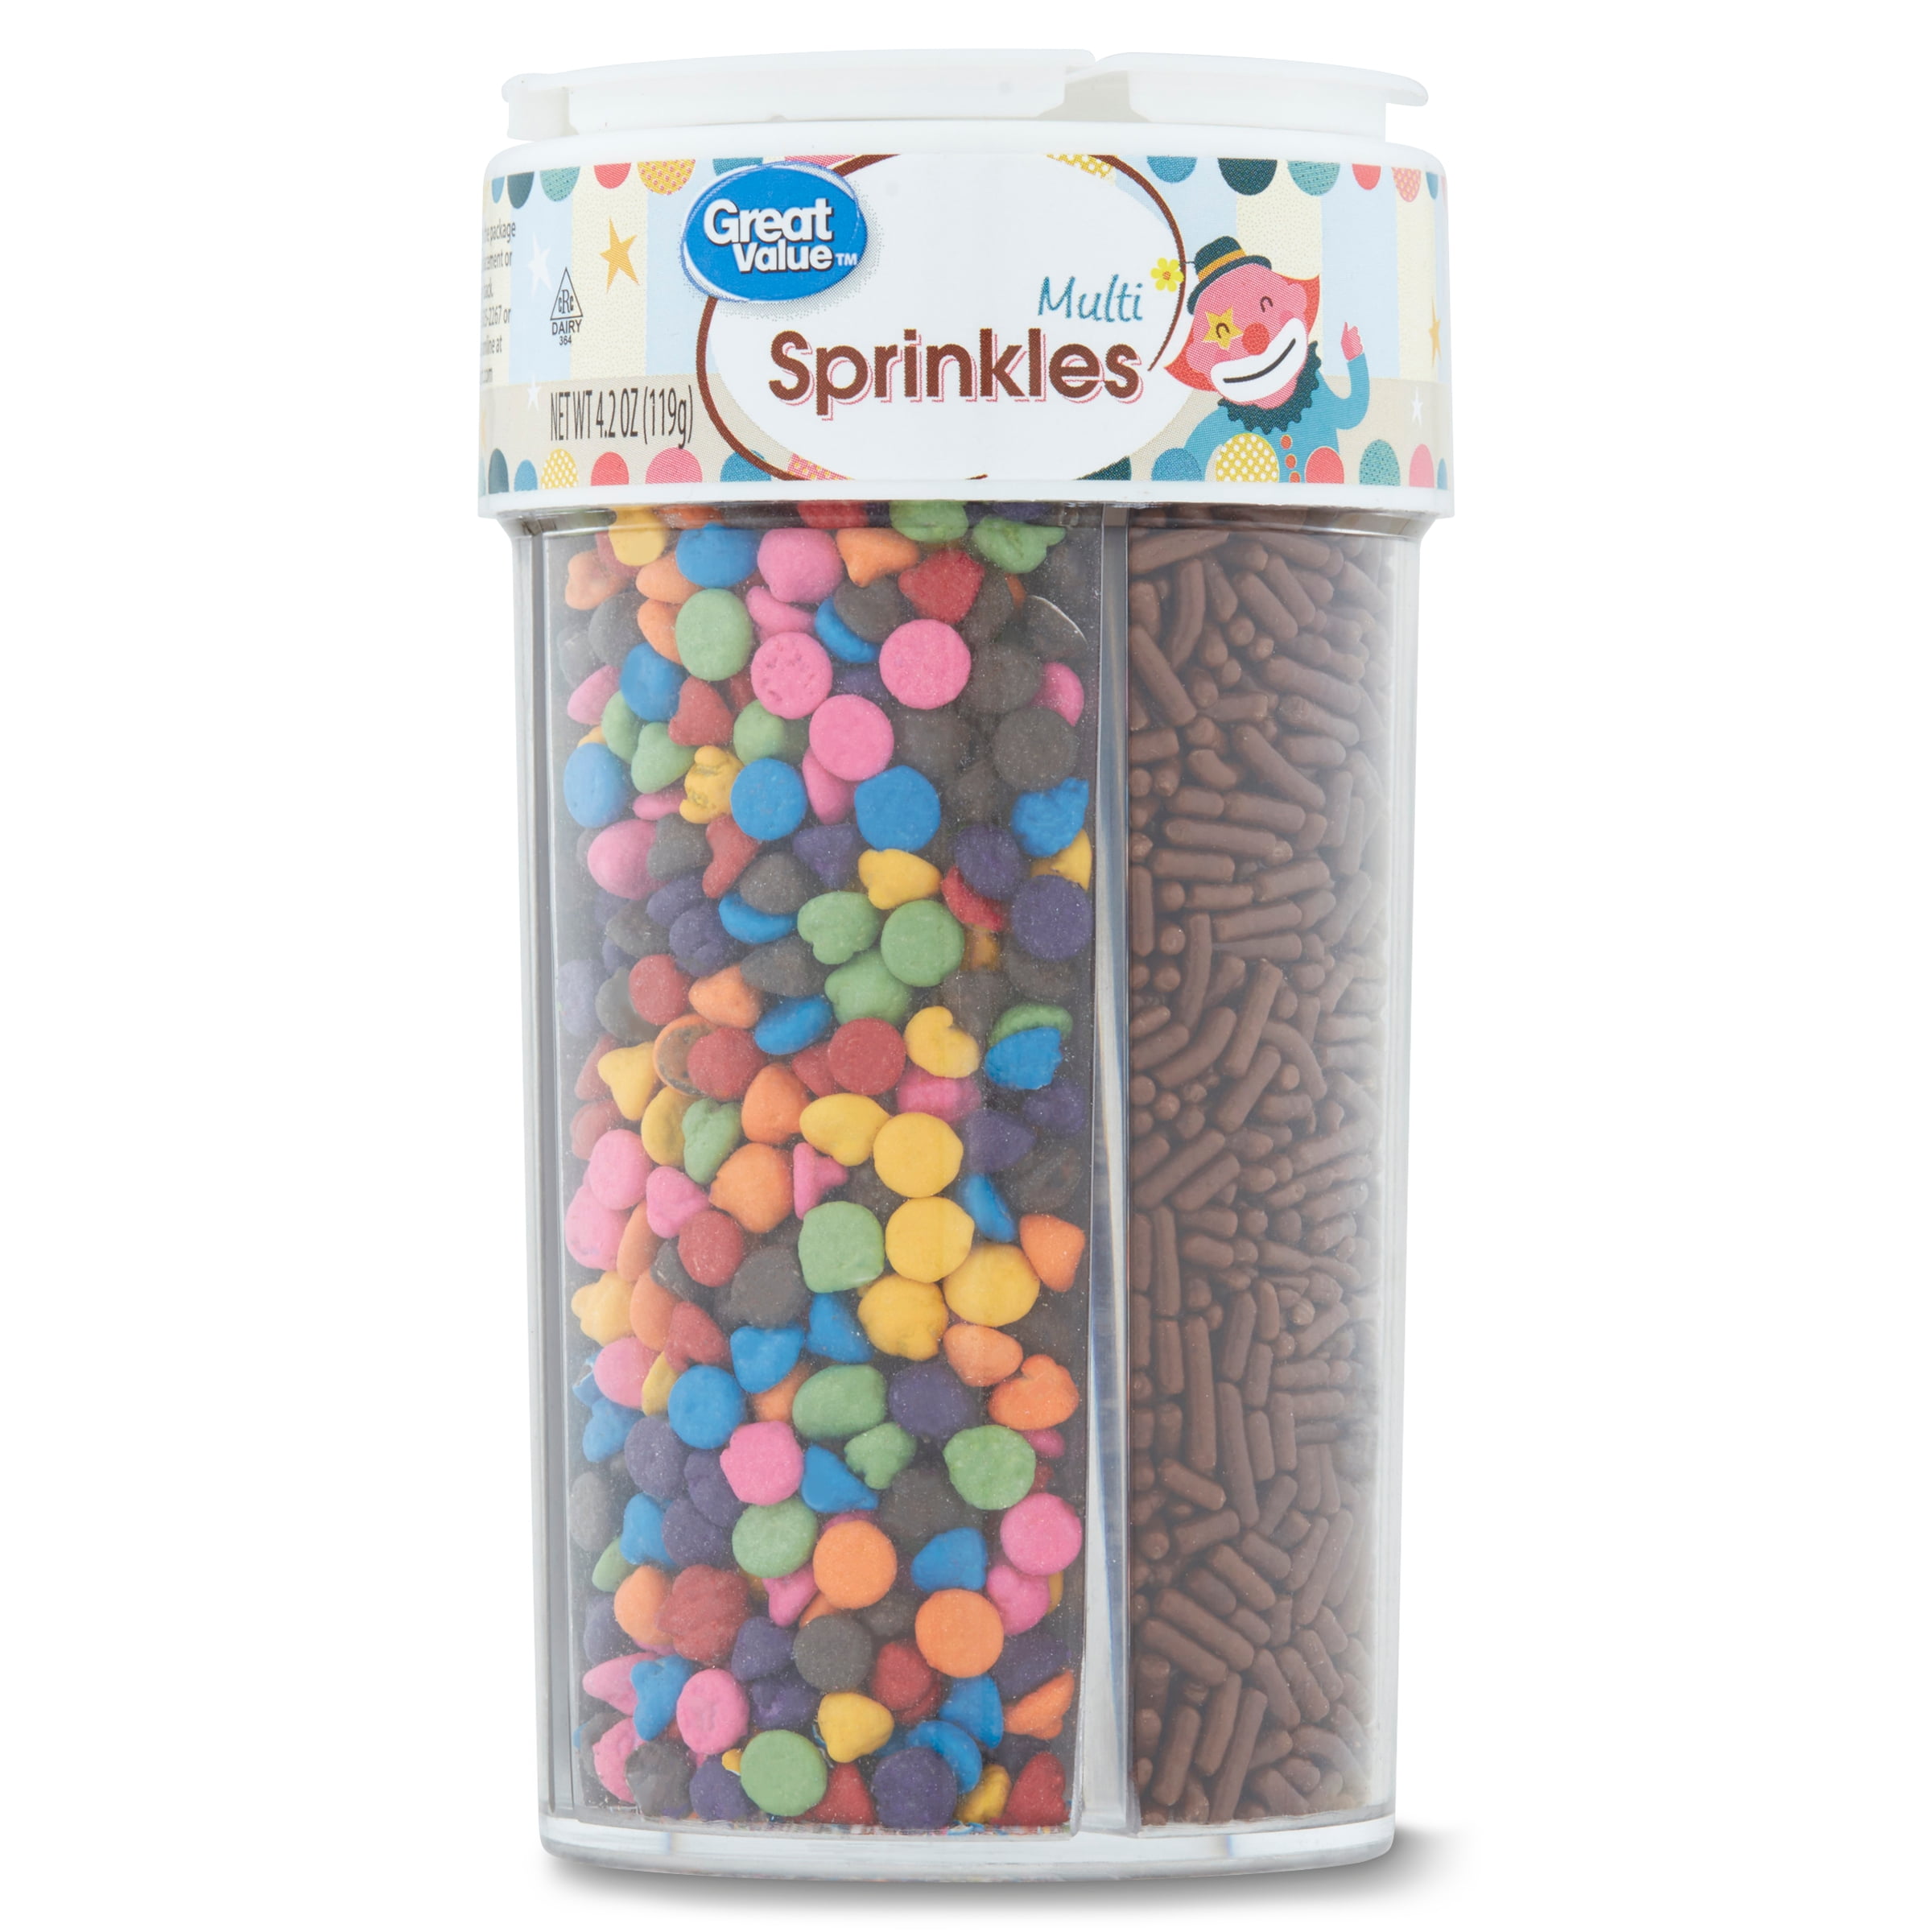 Great Value Multi Sprinkles, 4.2 oz